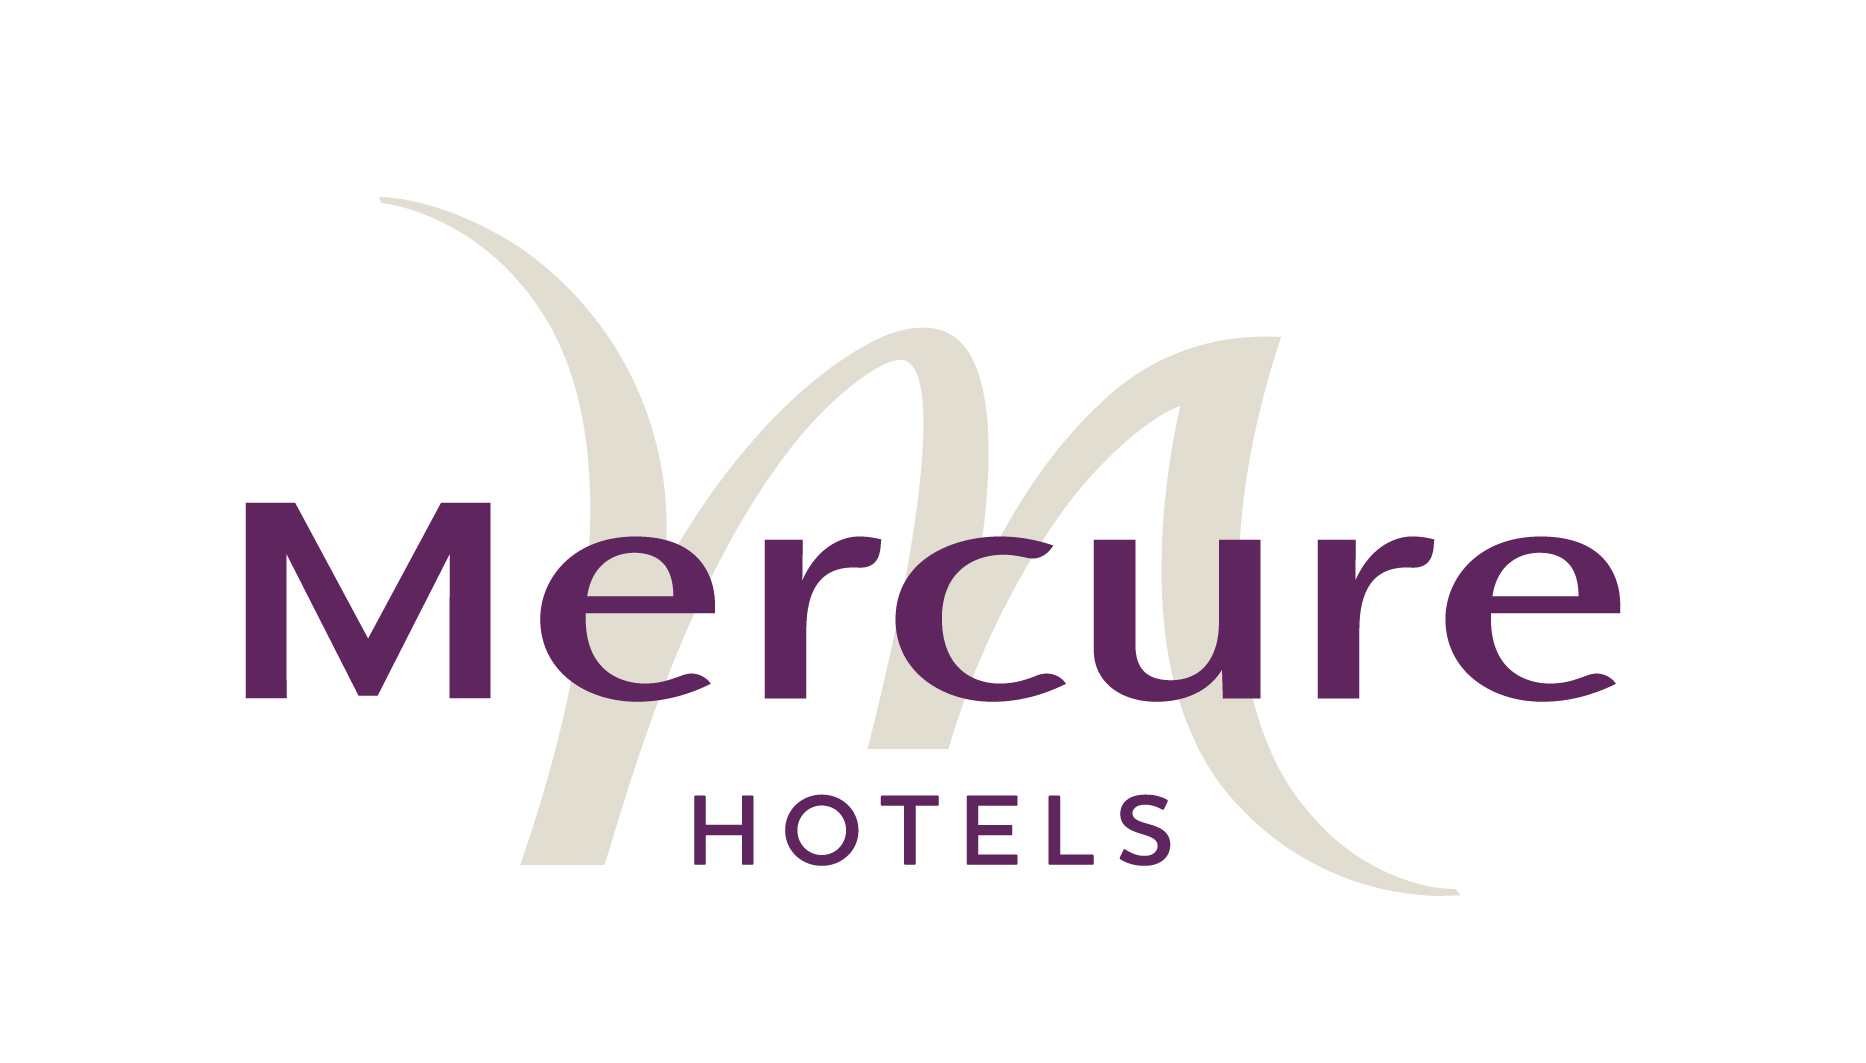 Mercure hotels rvb